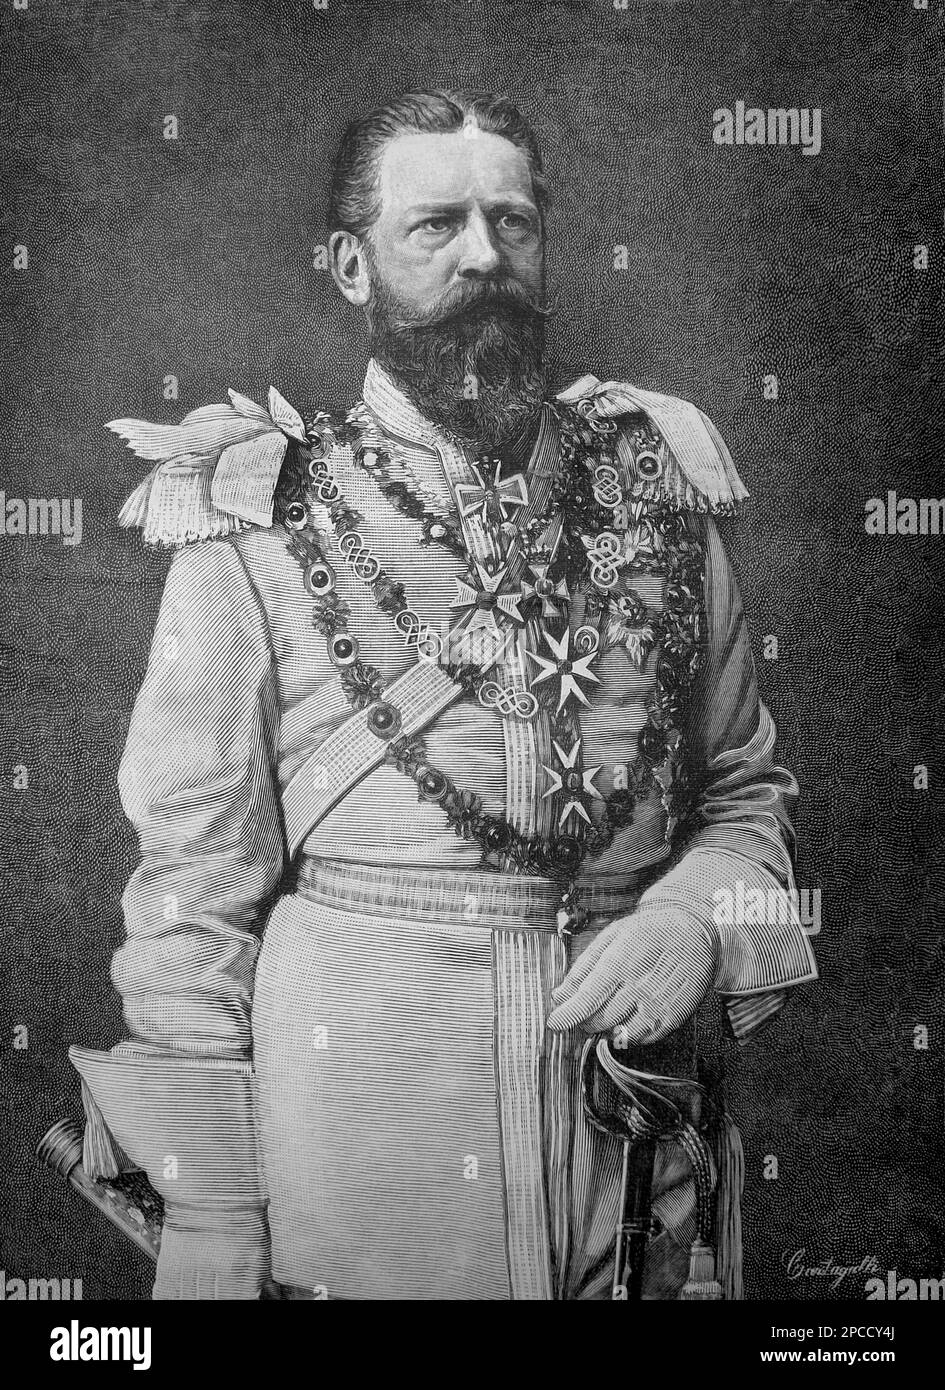 1888 , ALLEMAGNE : le Kaiser FREDERICK III ( 1831 - 1888 ) HOHENZOLLERN , père de Kaiser Wilhelm II ( Guglielmo II ) , roi de Prusse, empereur d'Allemagne ( 1859 - 1941 ) , petit-fils de la reine Victoria d'Angleterre . Gravure d'ILLUSTRAZIONE ITALIANA 1888. Frederick William (comme il était connu avant qu'il ait pris le trône) est né à Potsdam, le fils du prince Guillaume de Prusse et de la princesse Augusta de Saxe-Weimar. Son père était un frère plus jeune du roi Frederick William IV de Prusse . En 1858, Frederick William épousa la princesse Victoria (« Vicky ») de Grande-Bretagne et d'Irlande, l'aîné Banque D'Images